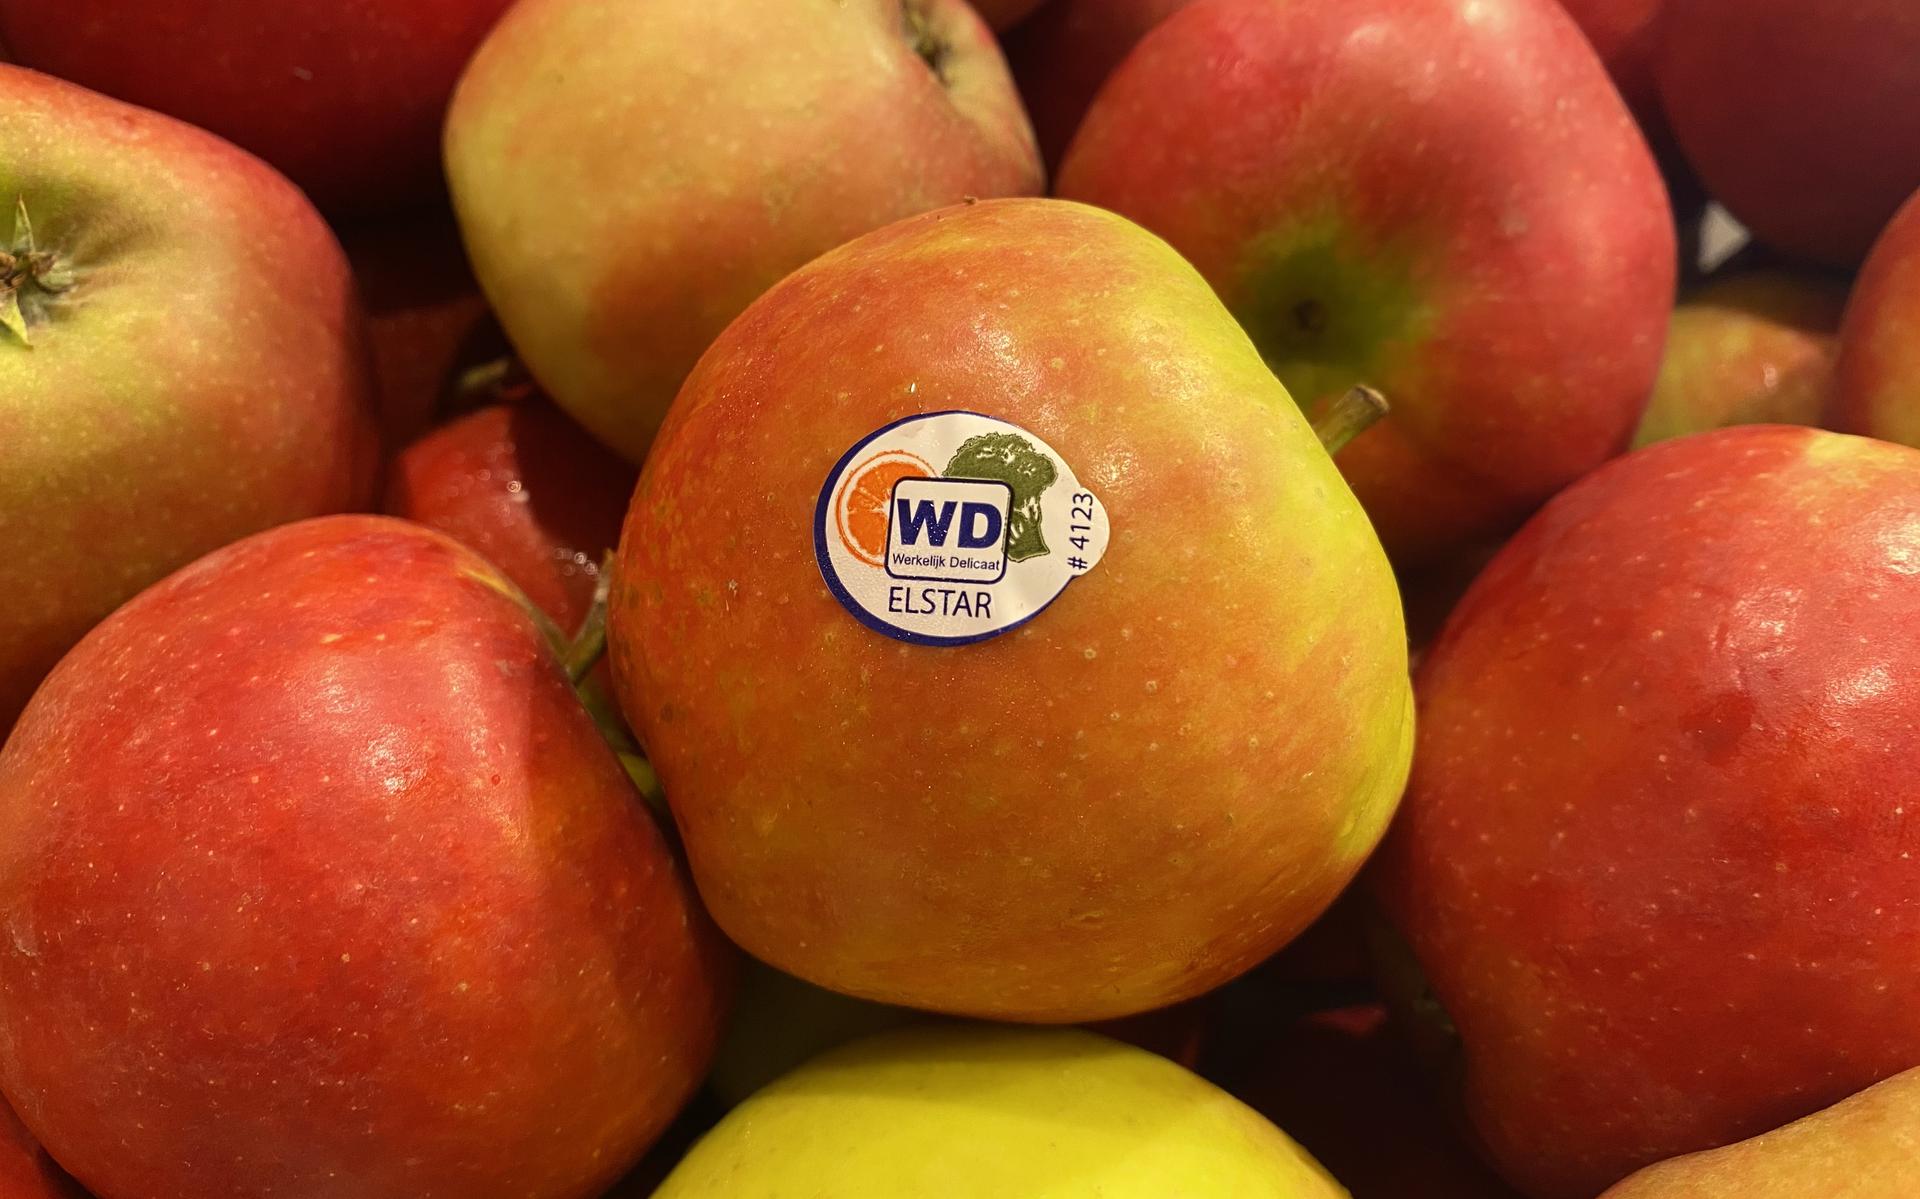 Elstar-appels zijn nu amper de supermarkt te vinden, maar wel (bijna) het jaar bij groenteboer - Leeuwarder Courant